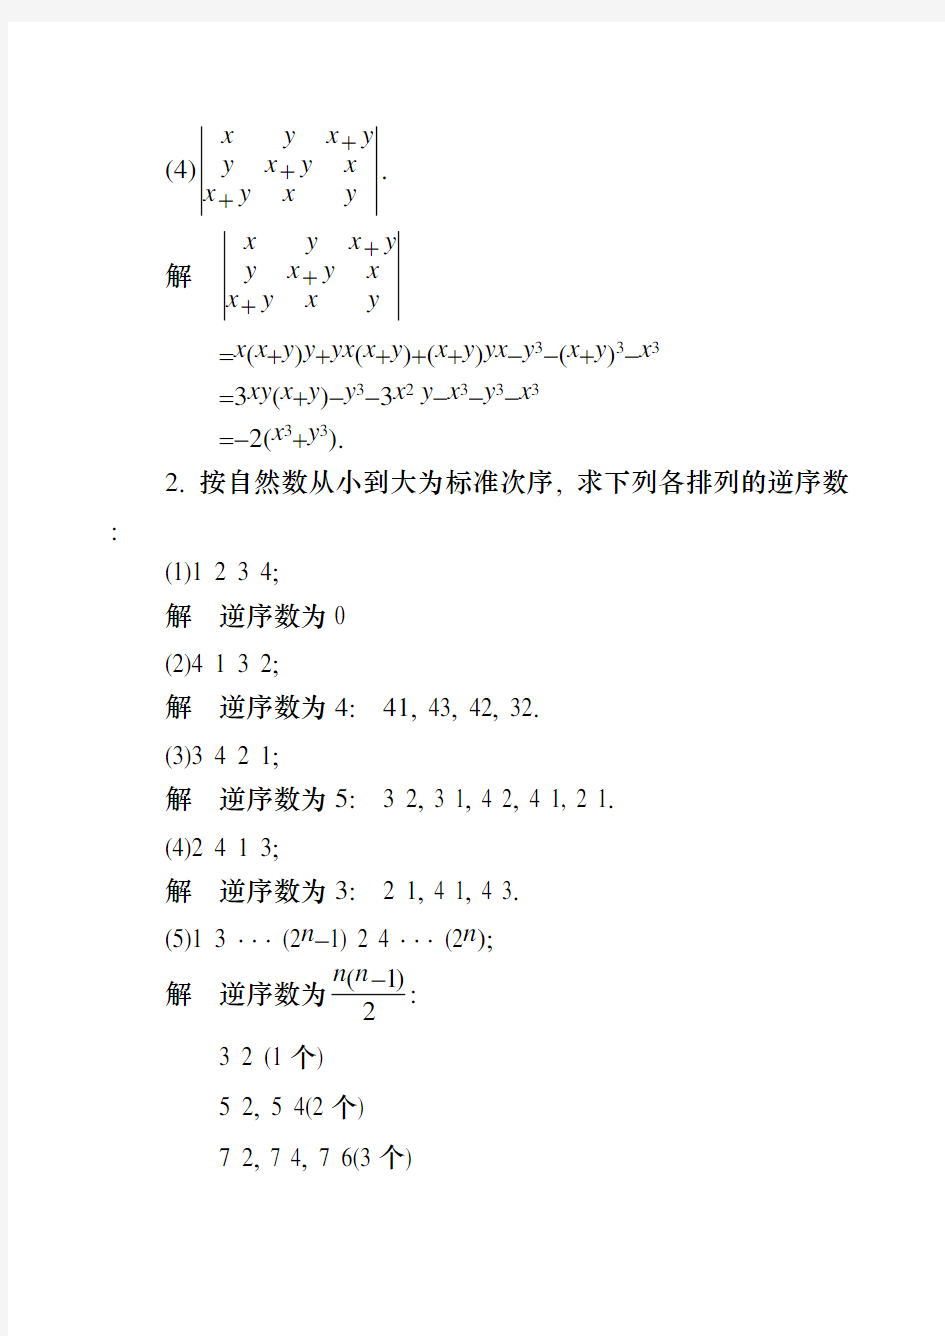 同济大学工程数学线性代数第六版答案(全)